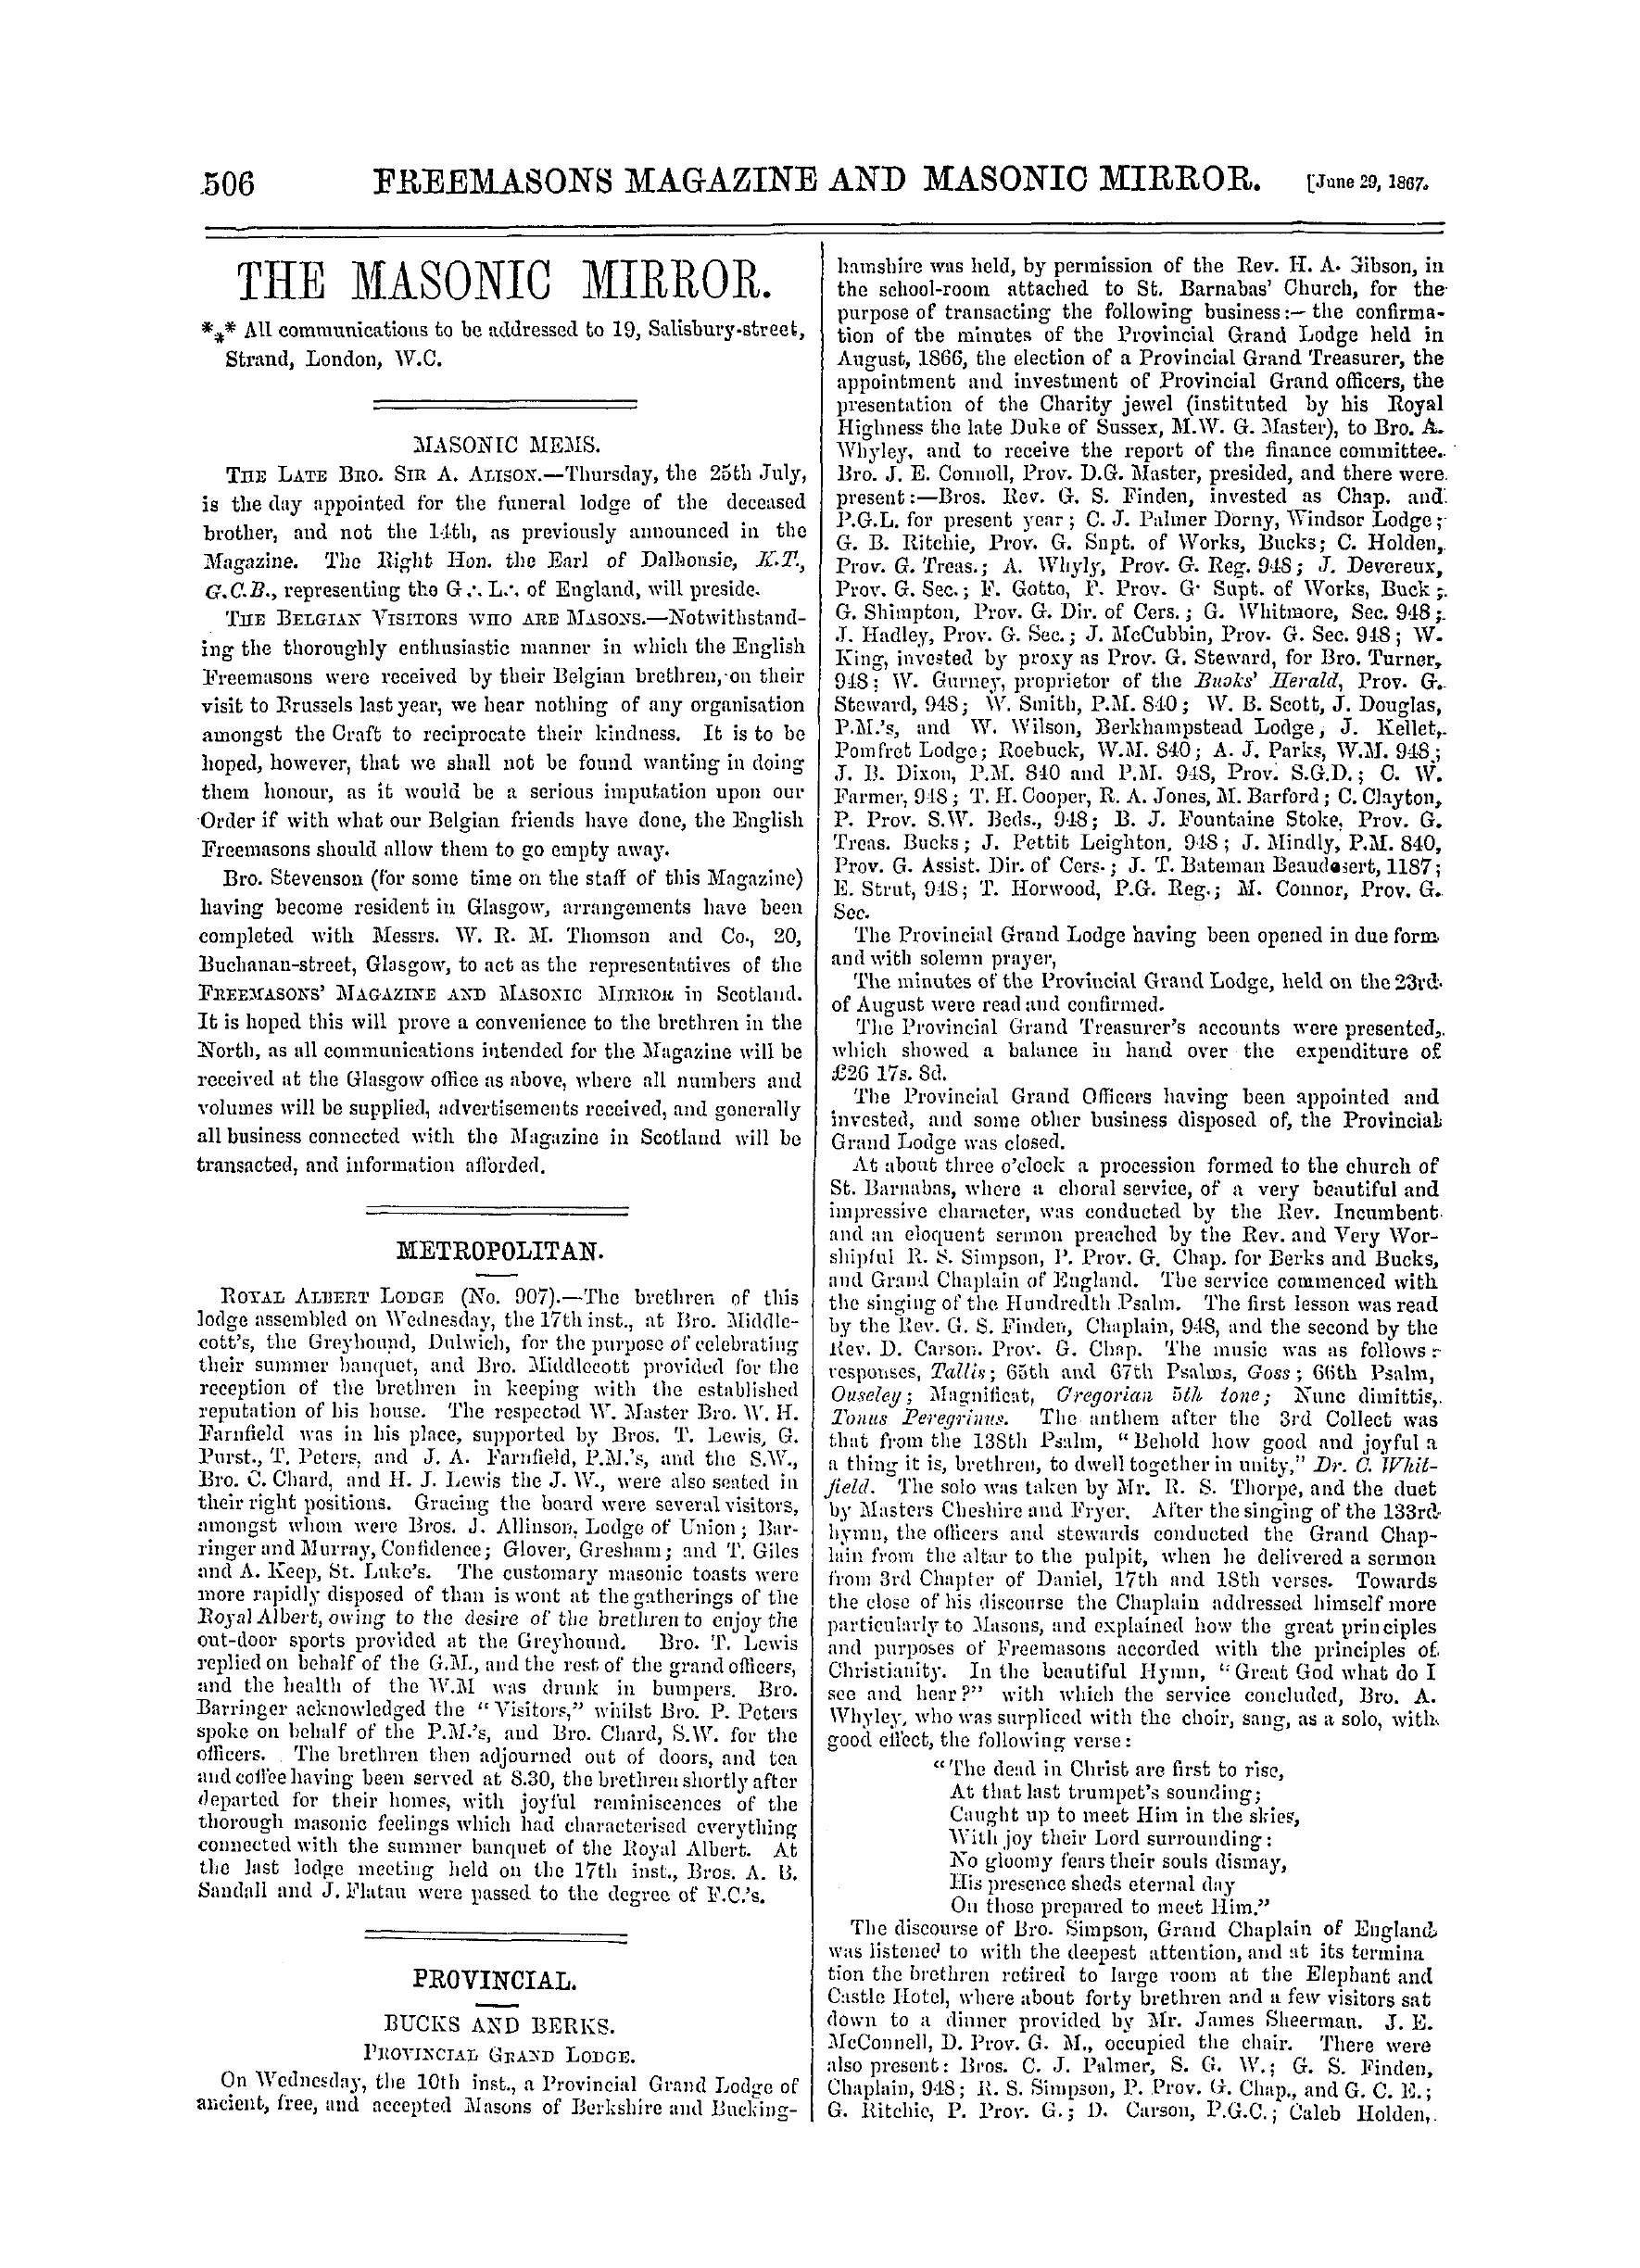 The Freemasons' Monthly Magazine: 1867-06-29: 6